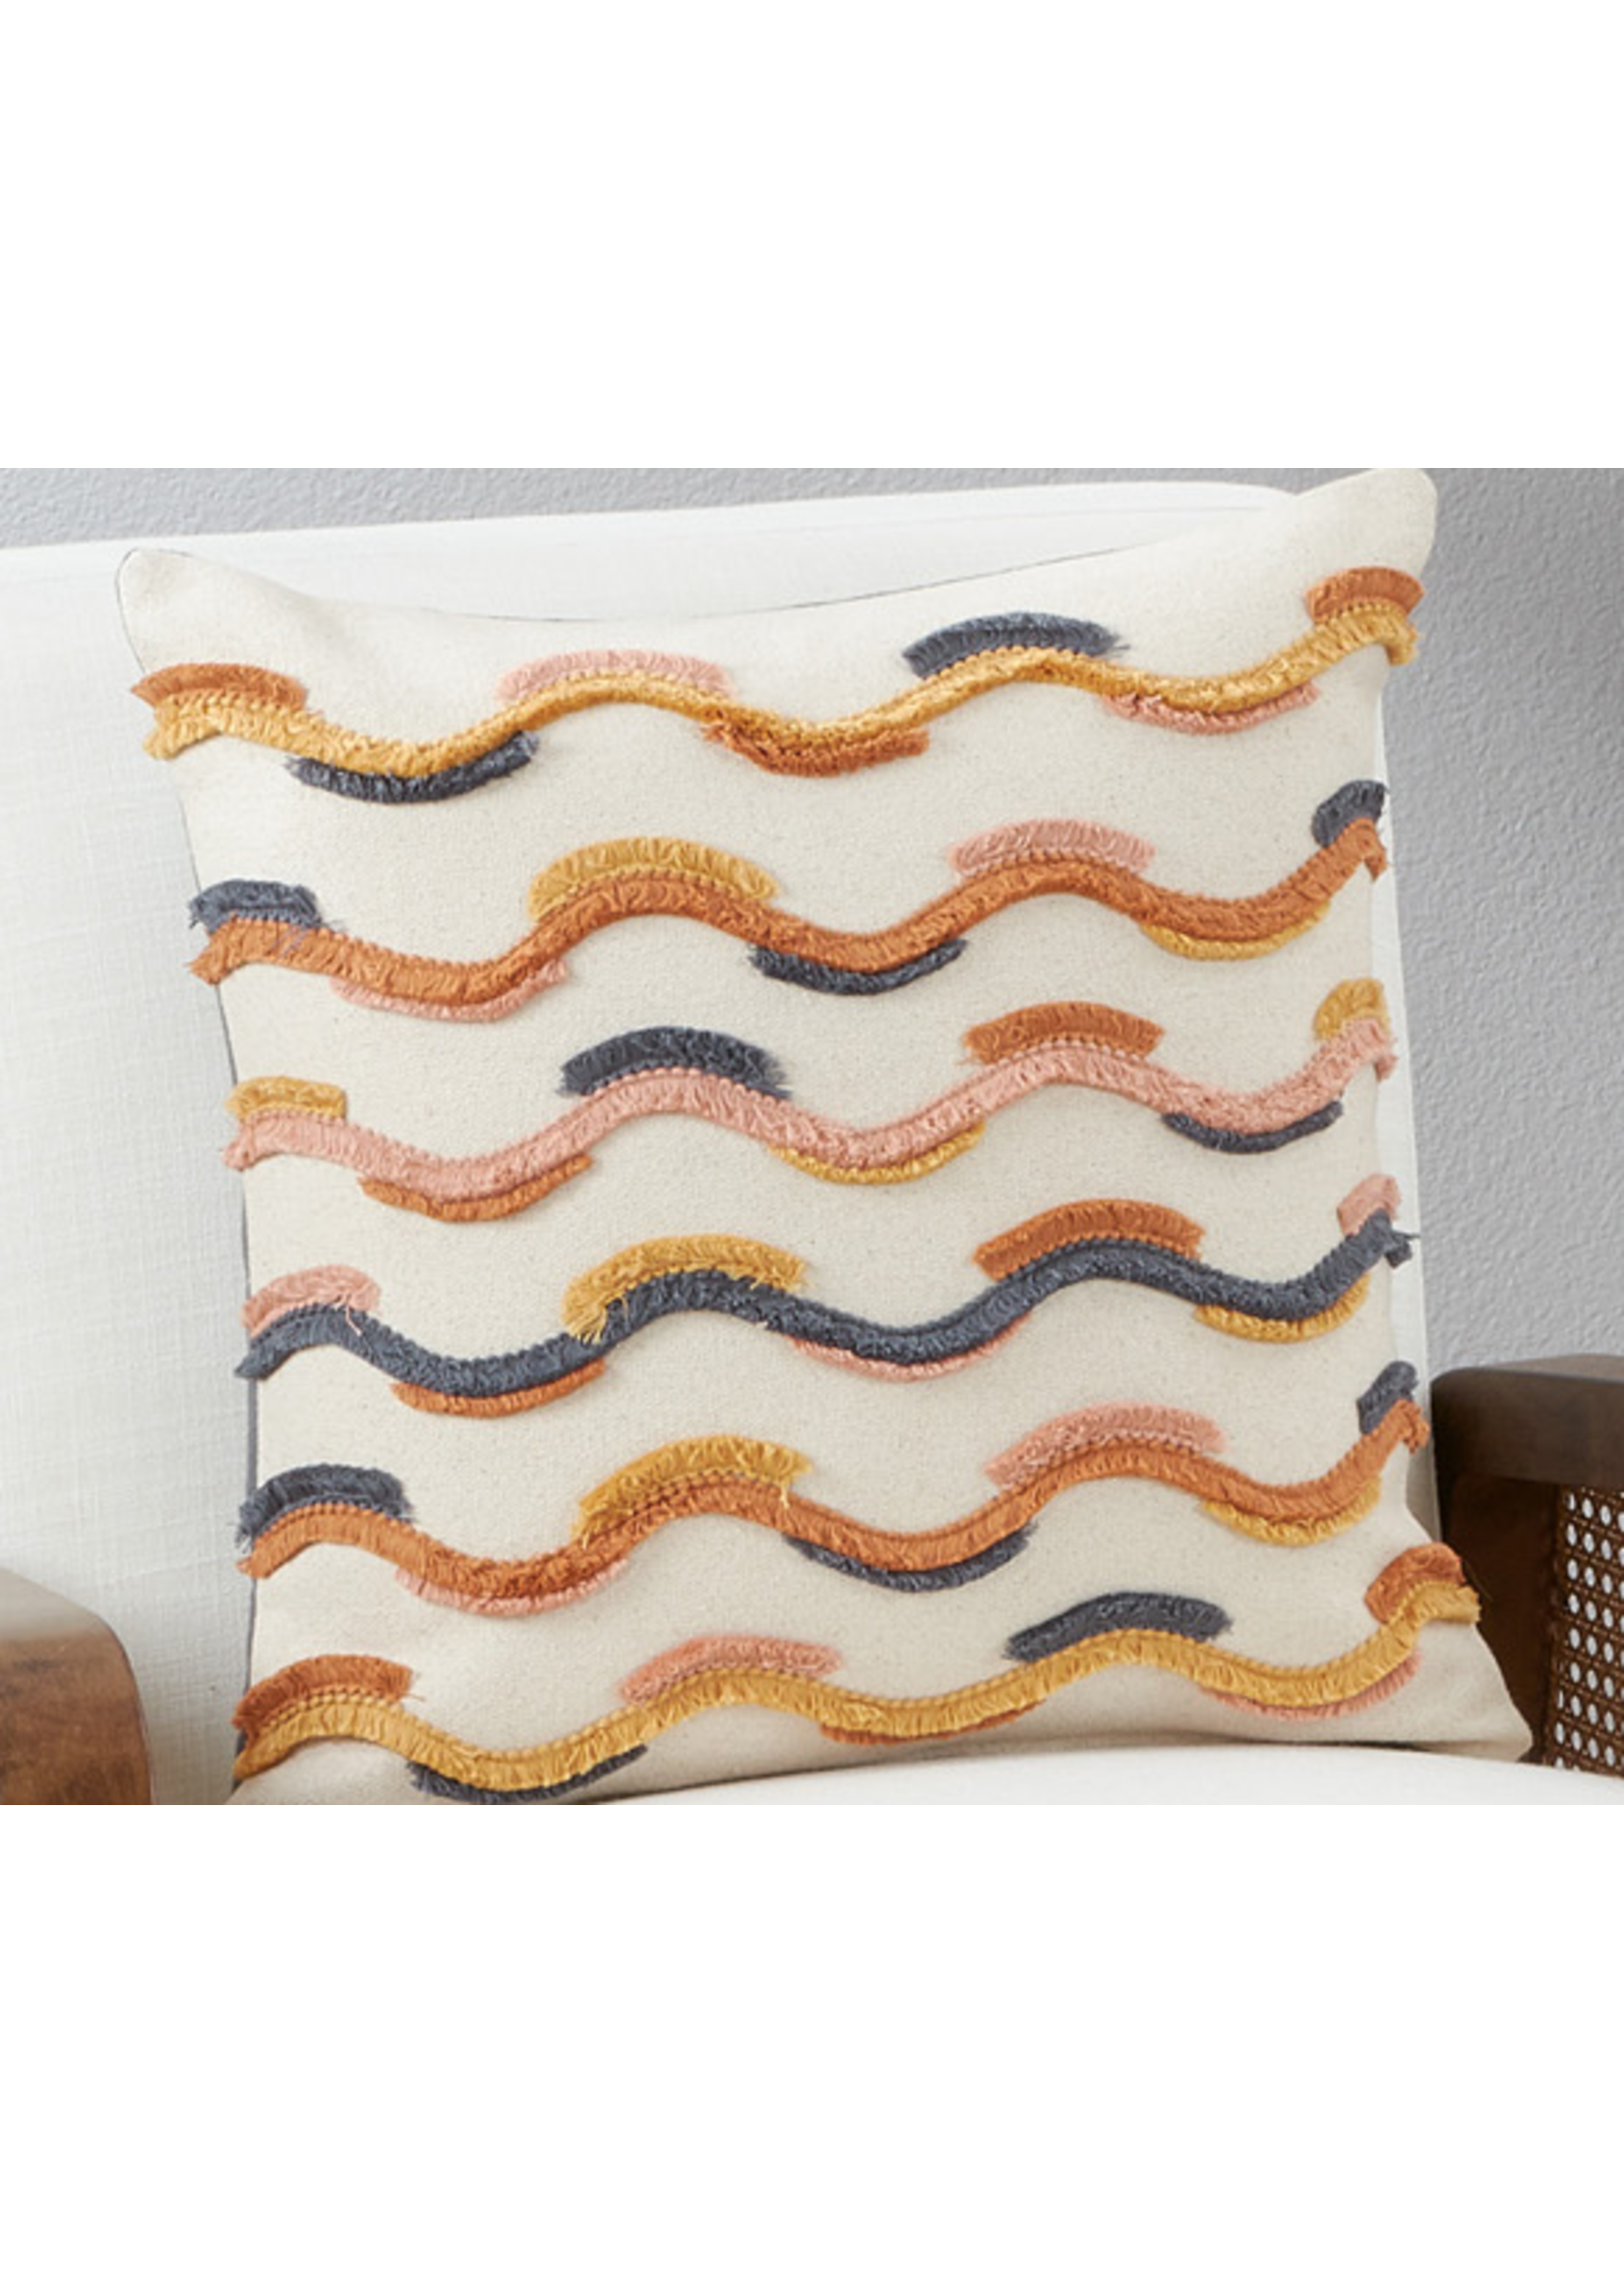 Saro Saro Fringe Lace Applique Pillow Down Filled 18x18